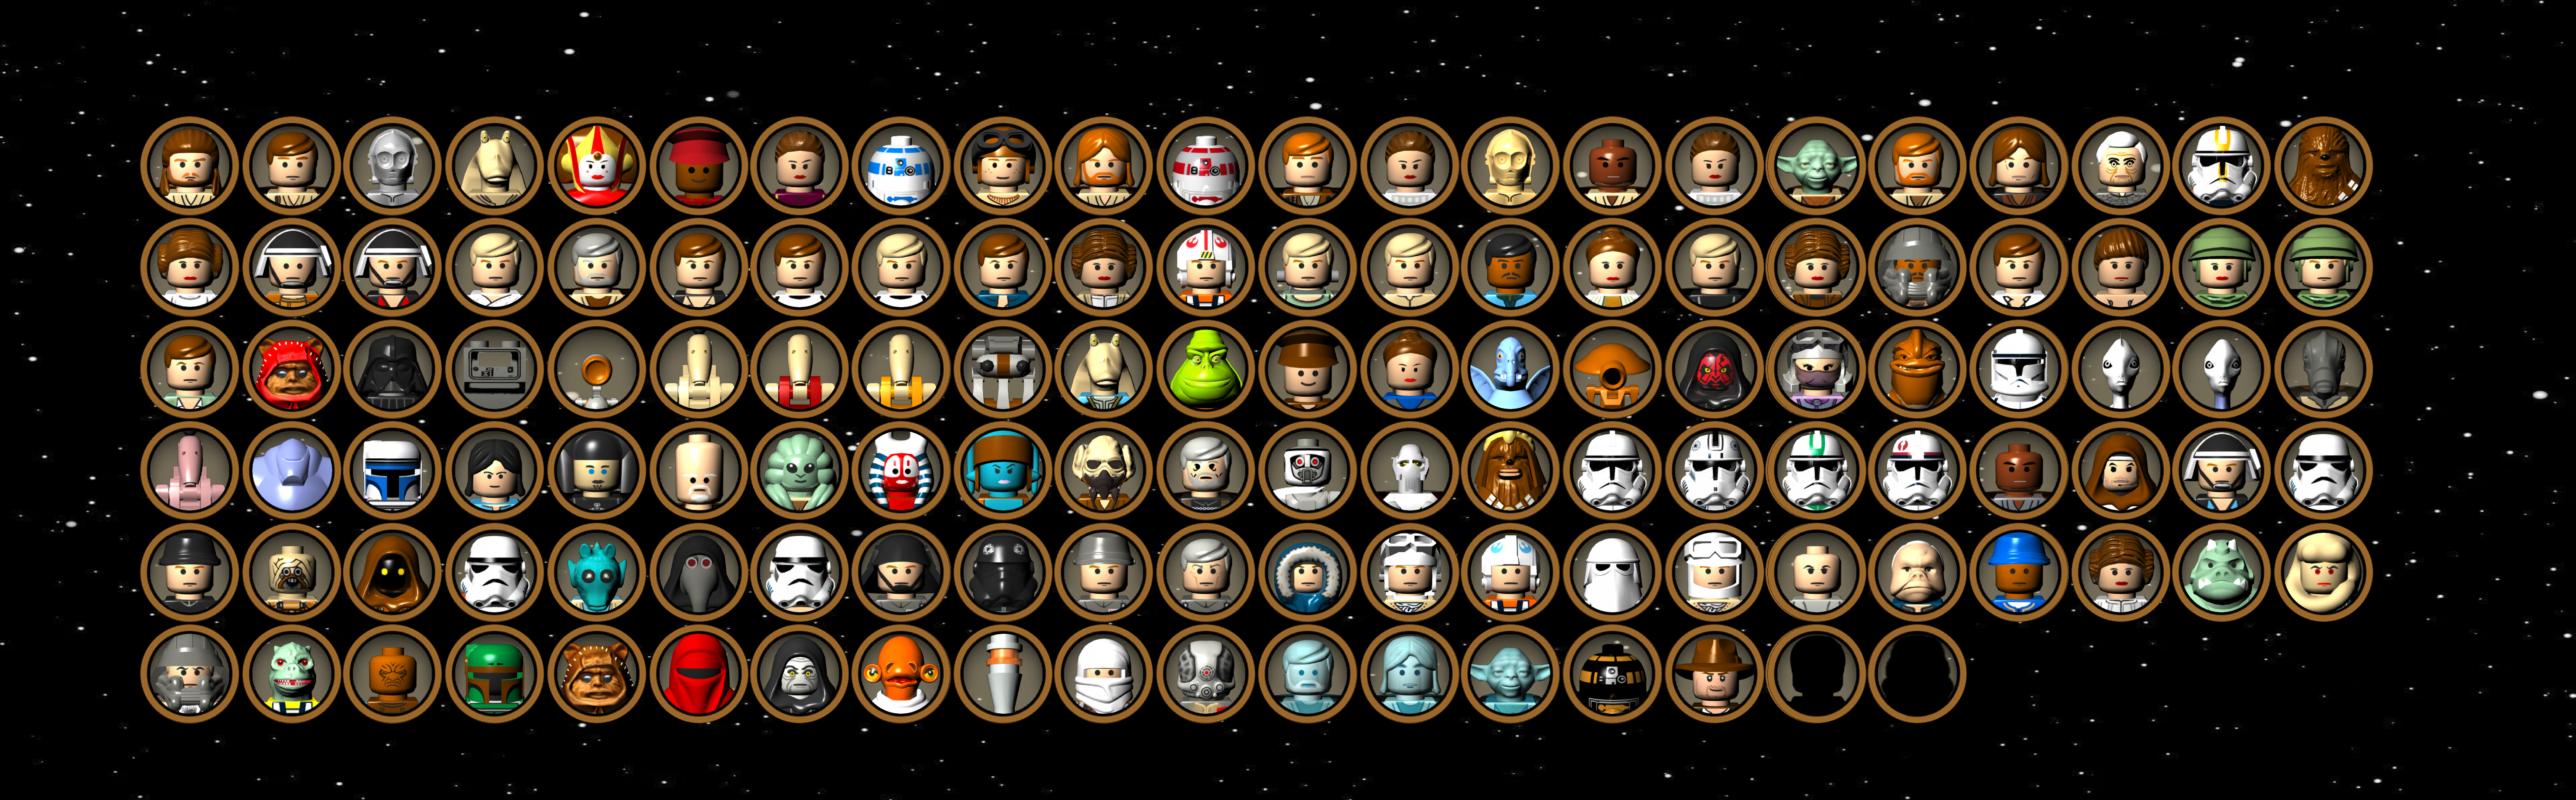 lego star wars character circles